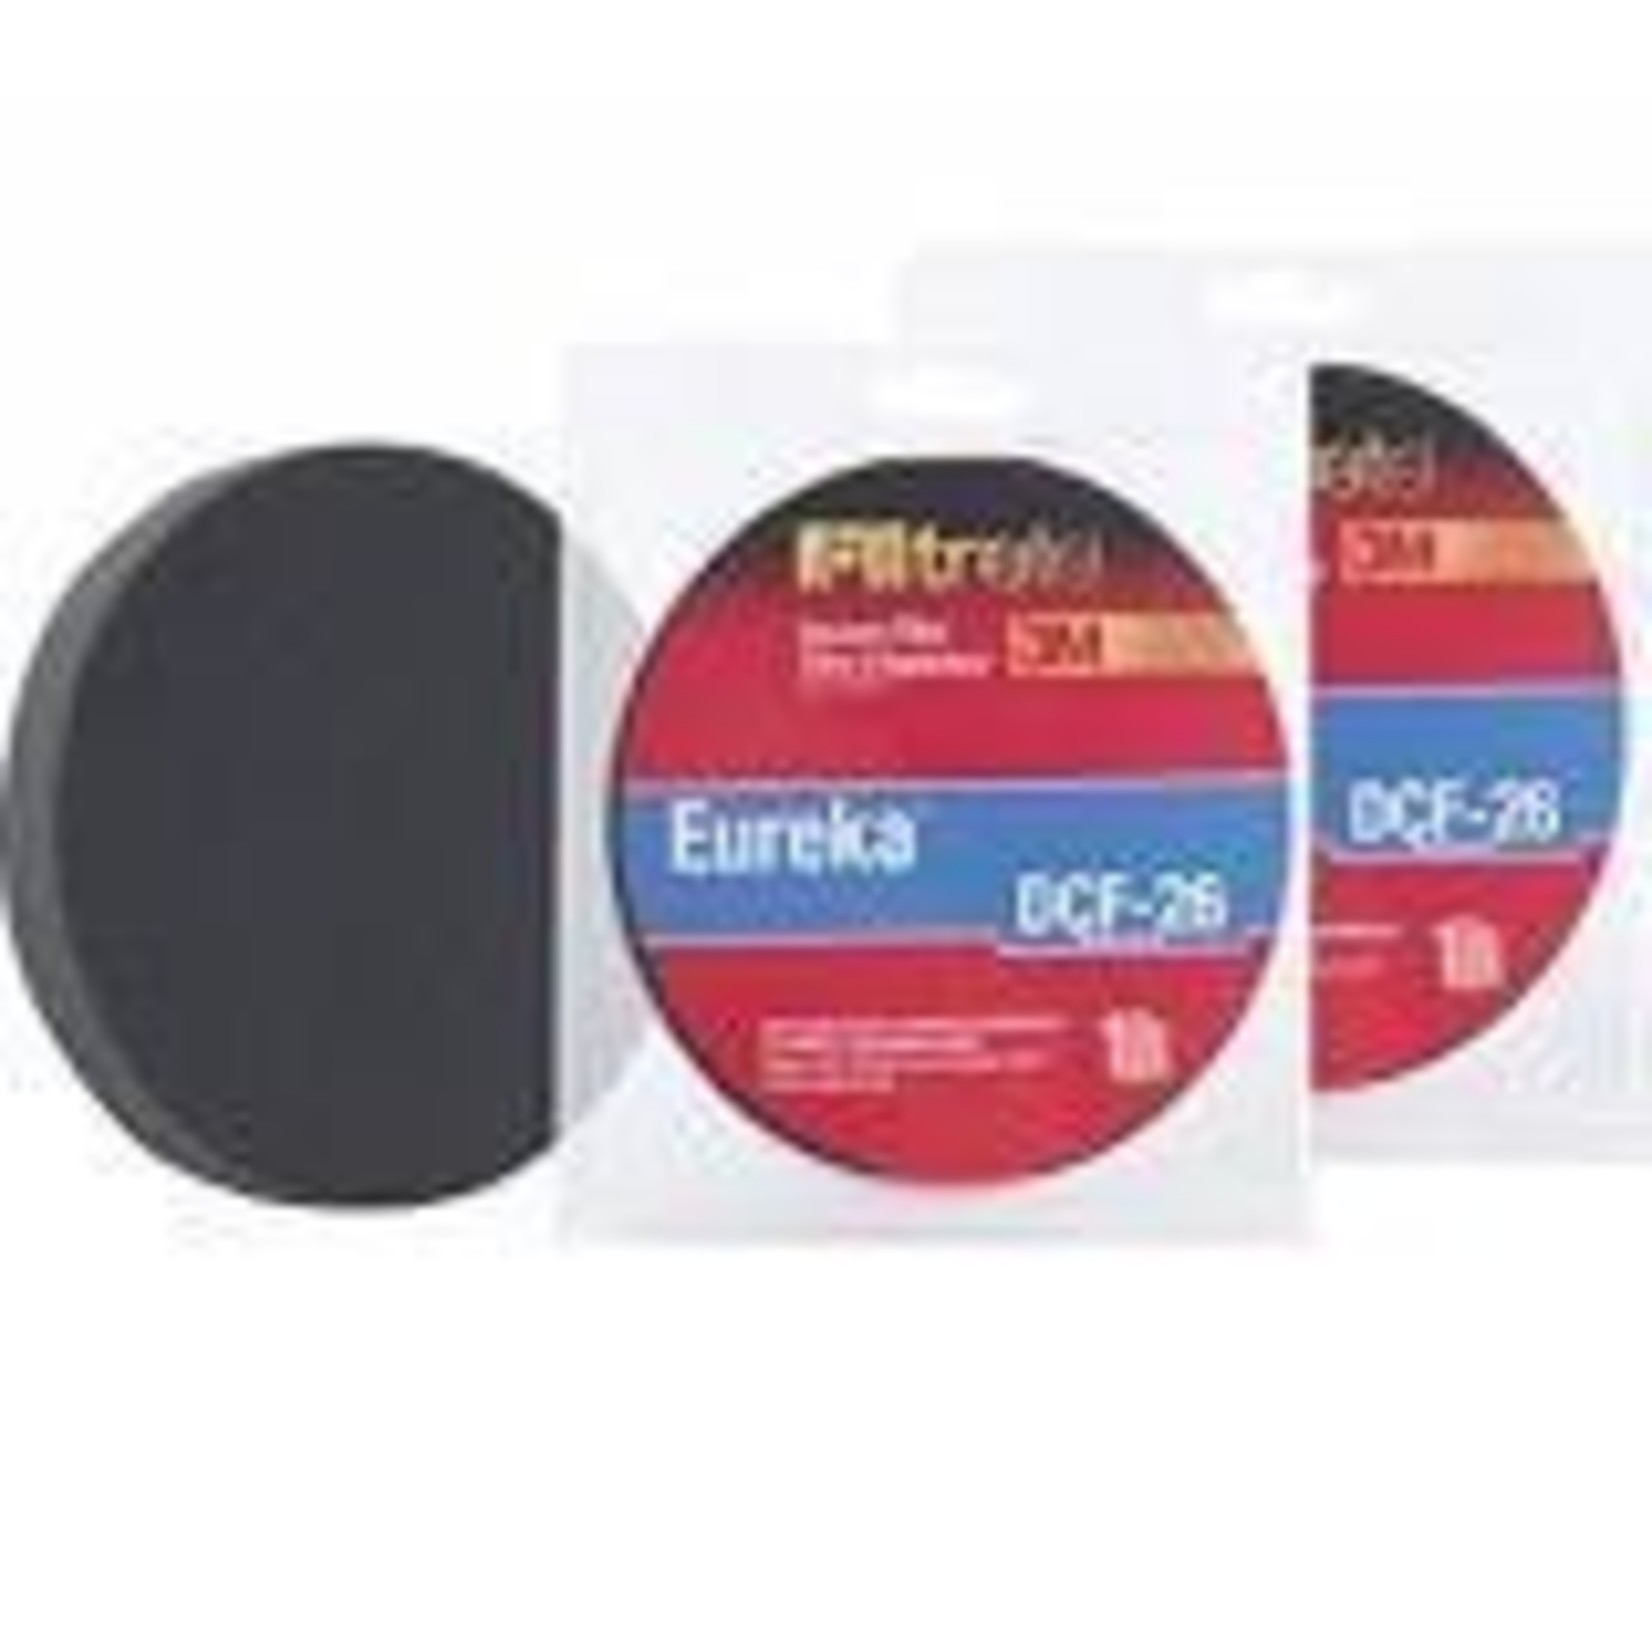 Eureka Eureka DCF-26 Filter for AS52** Series